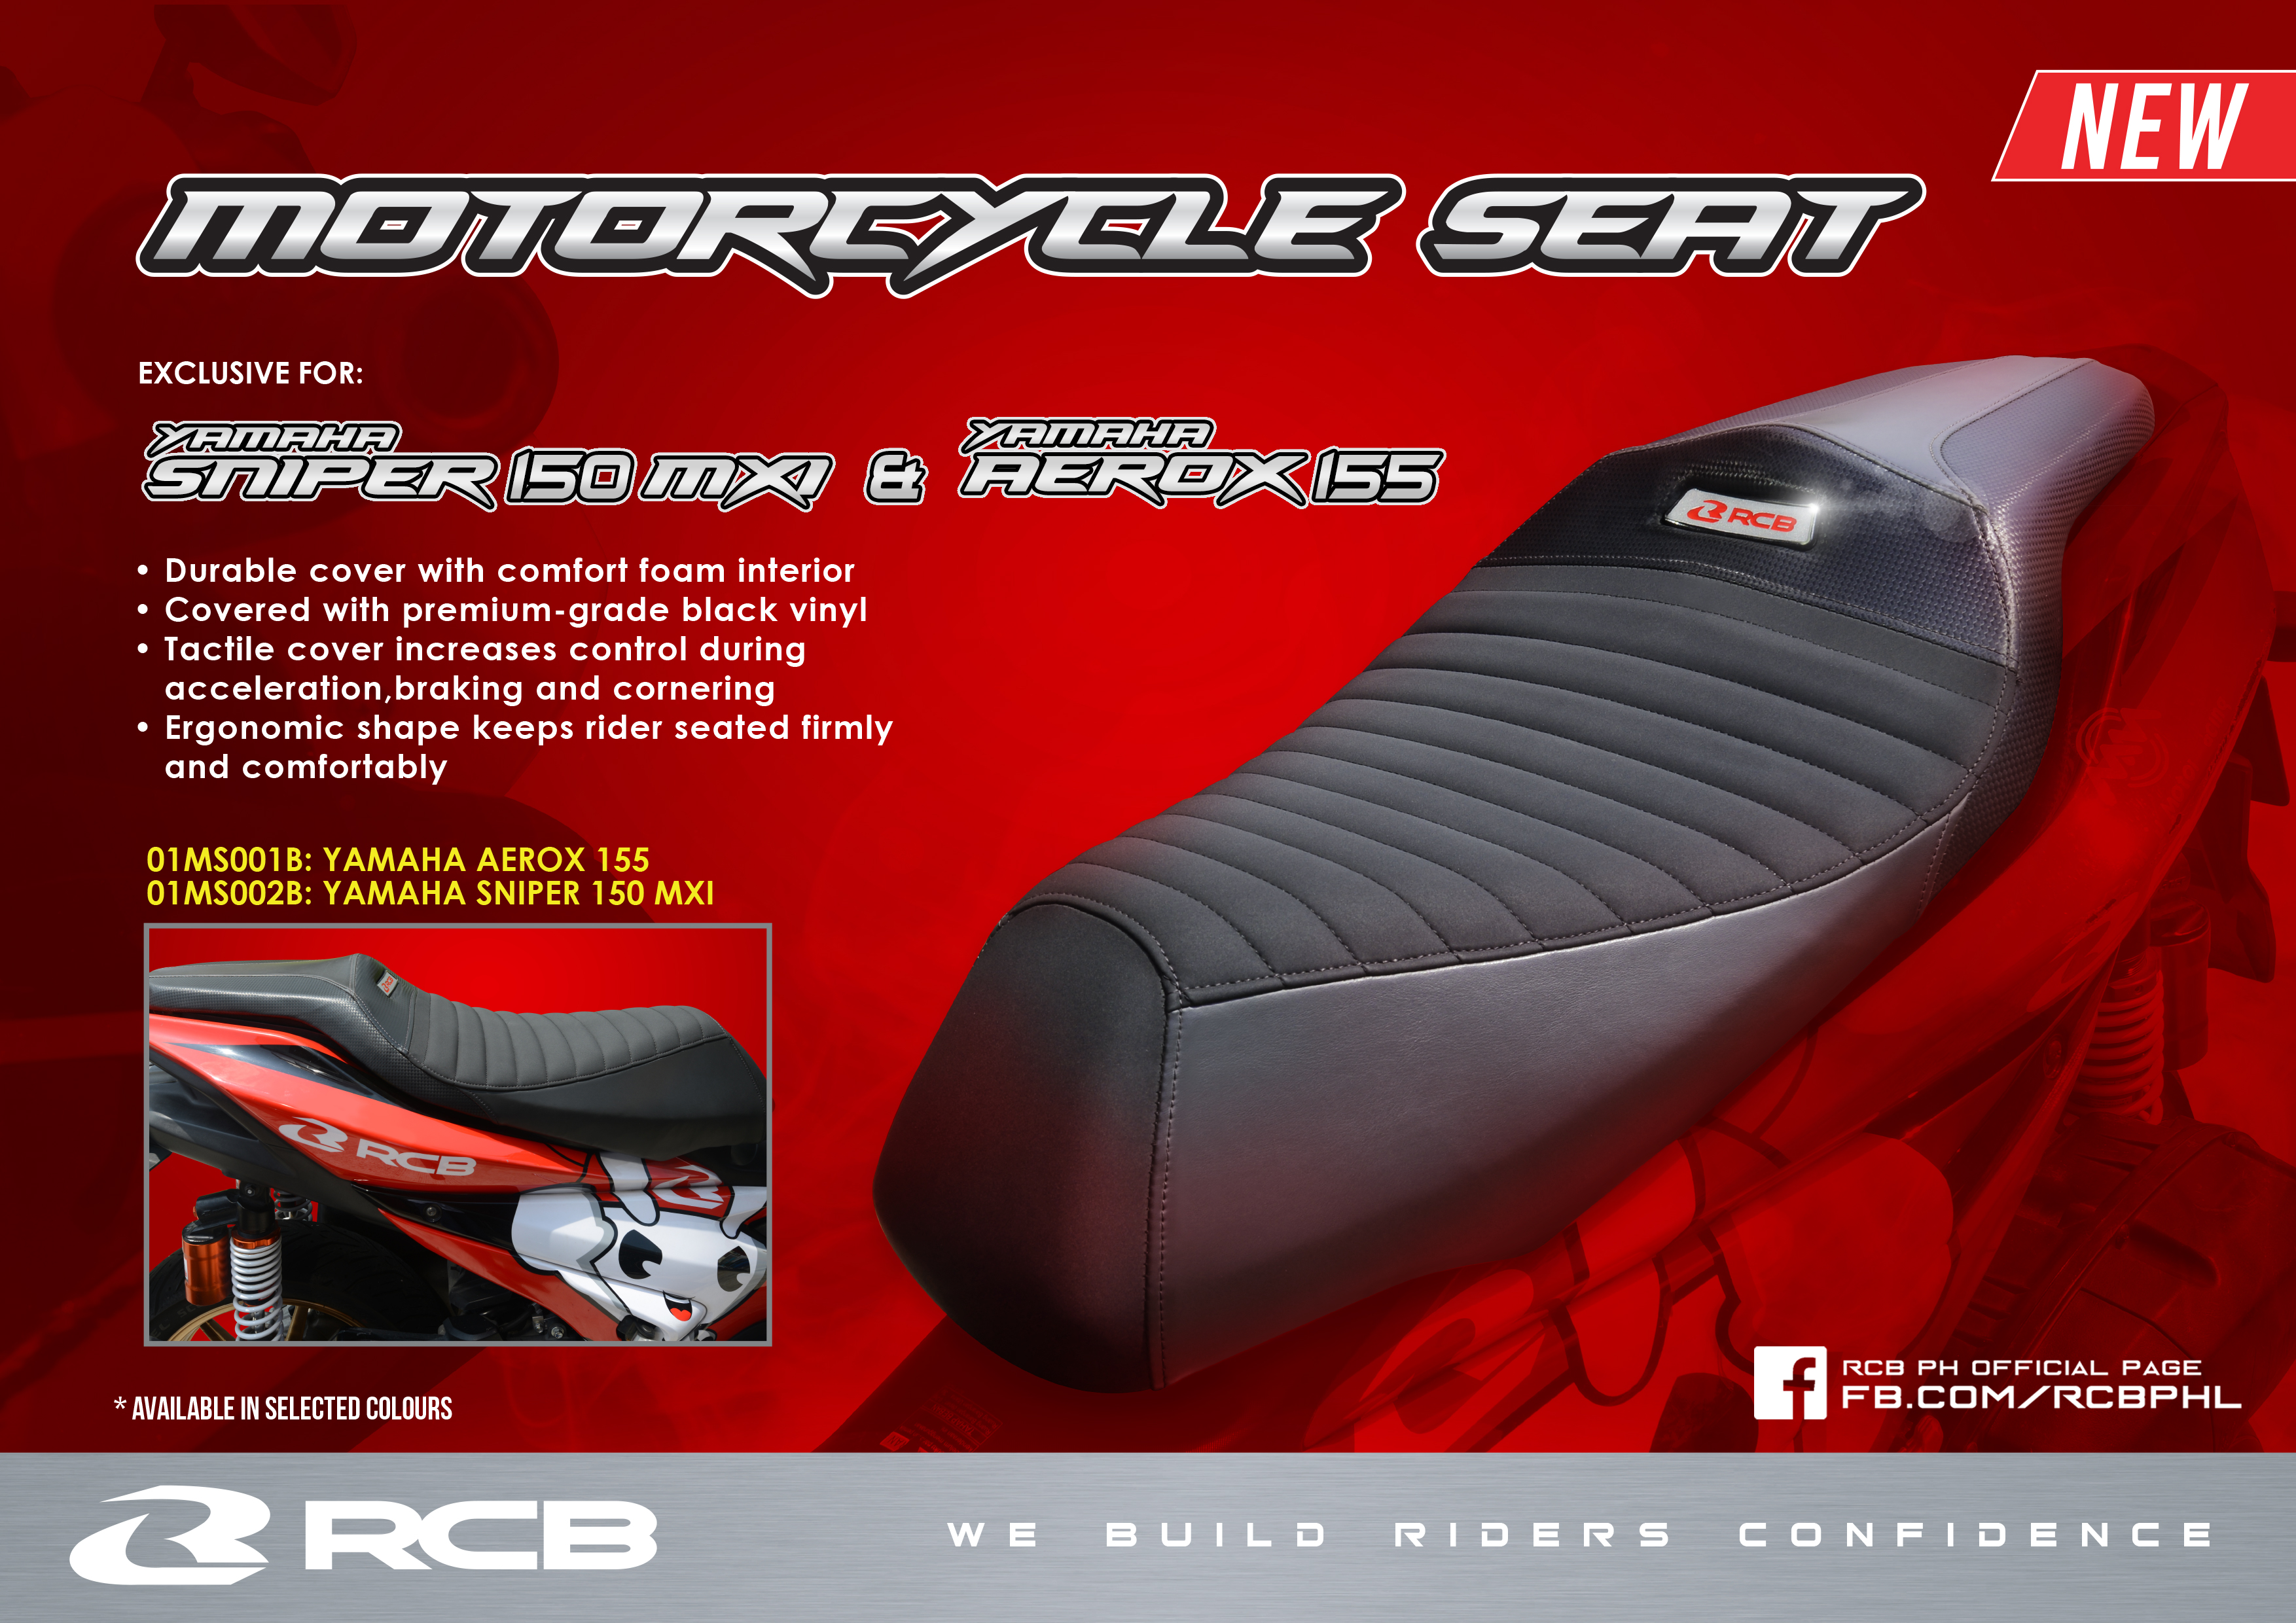 RCB Motorcycle Seat5